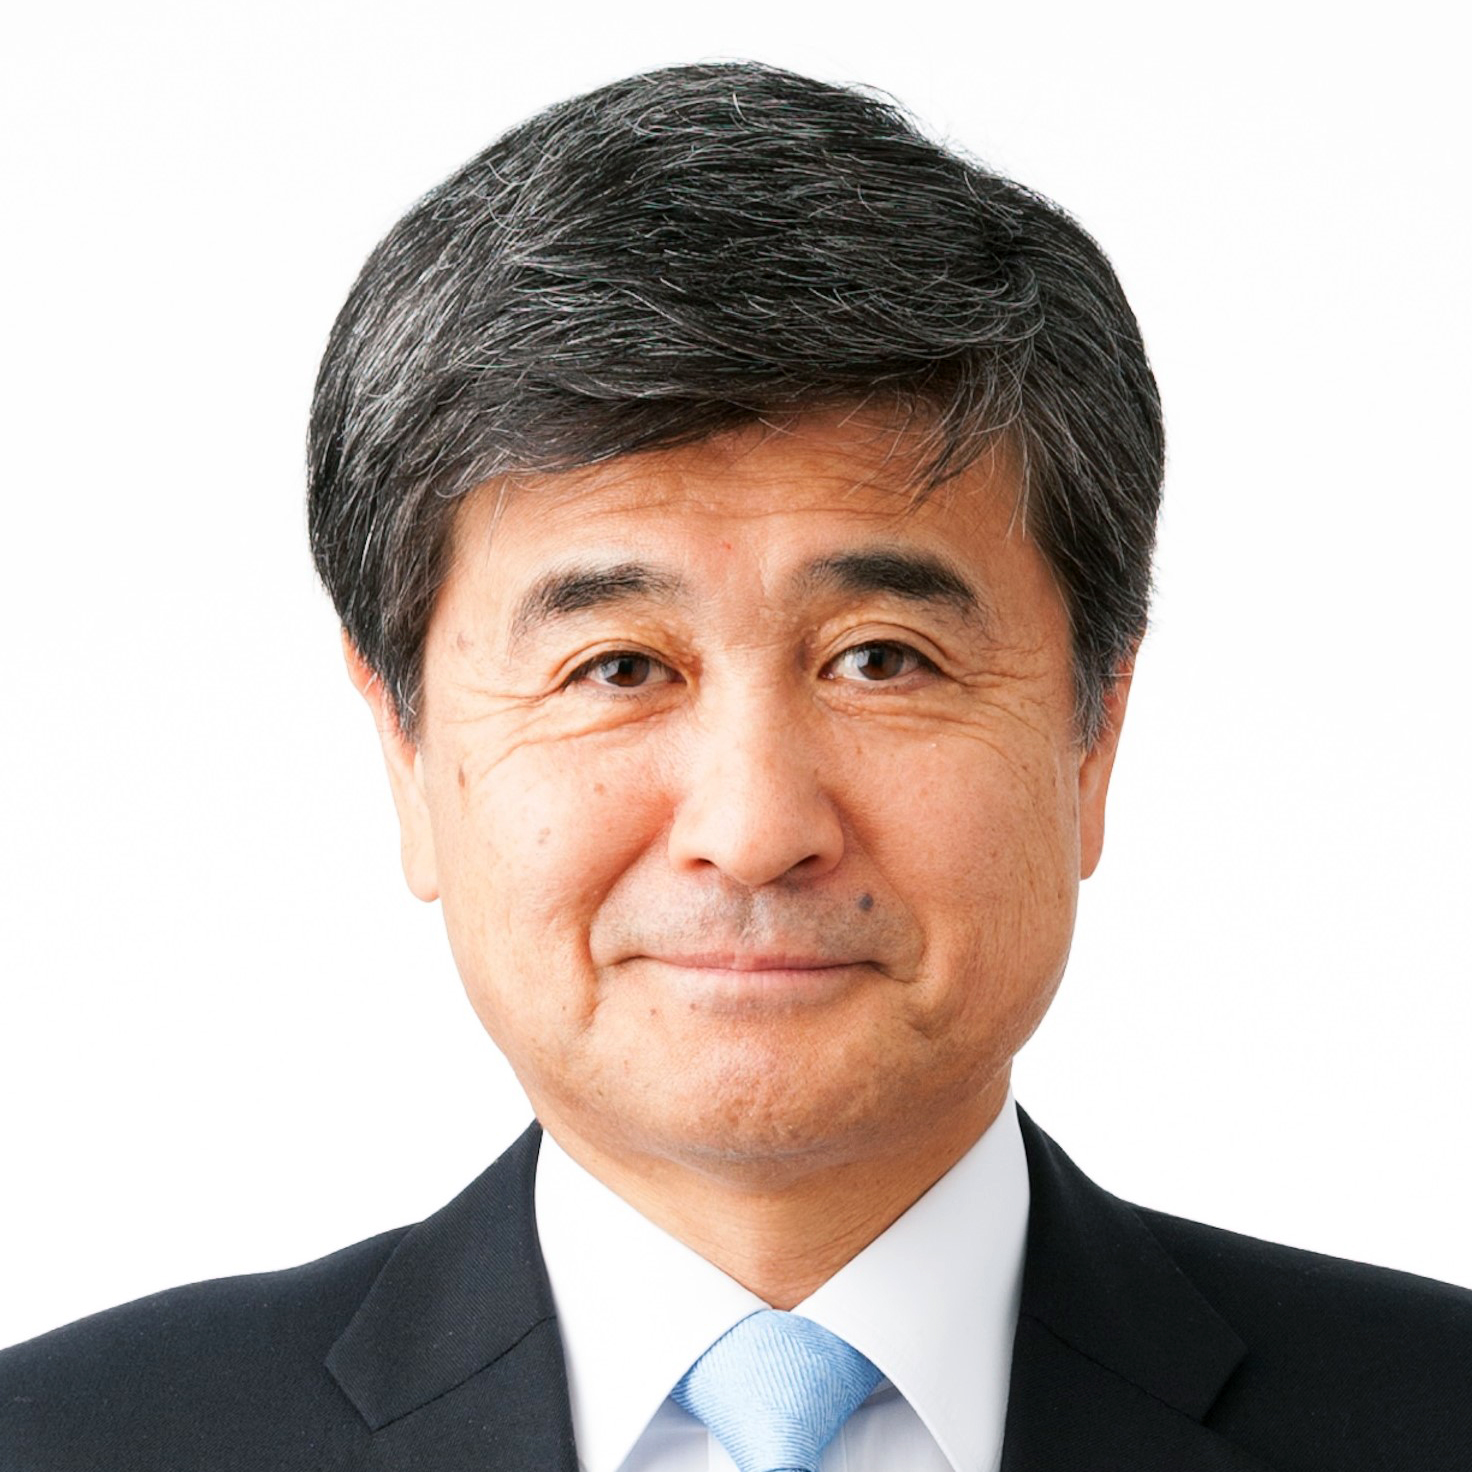 【2021年年頭所感】日本電気計測器工業会 「価値向上へ変革と飛躍加速」西島剛志 会長